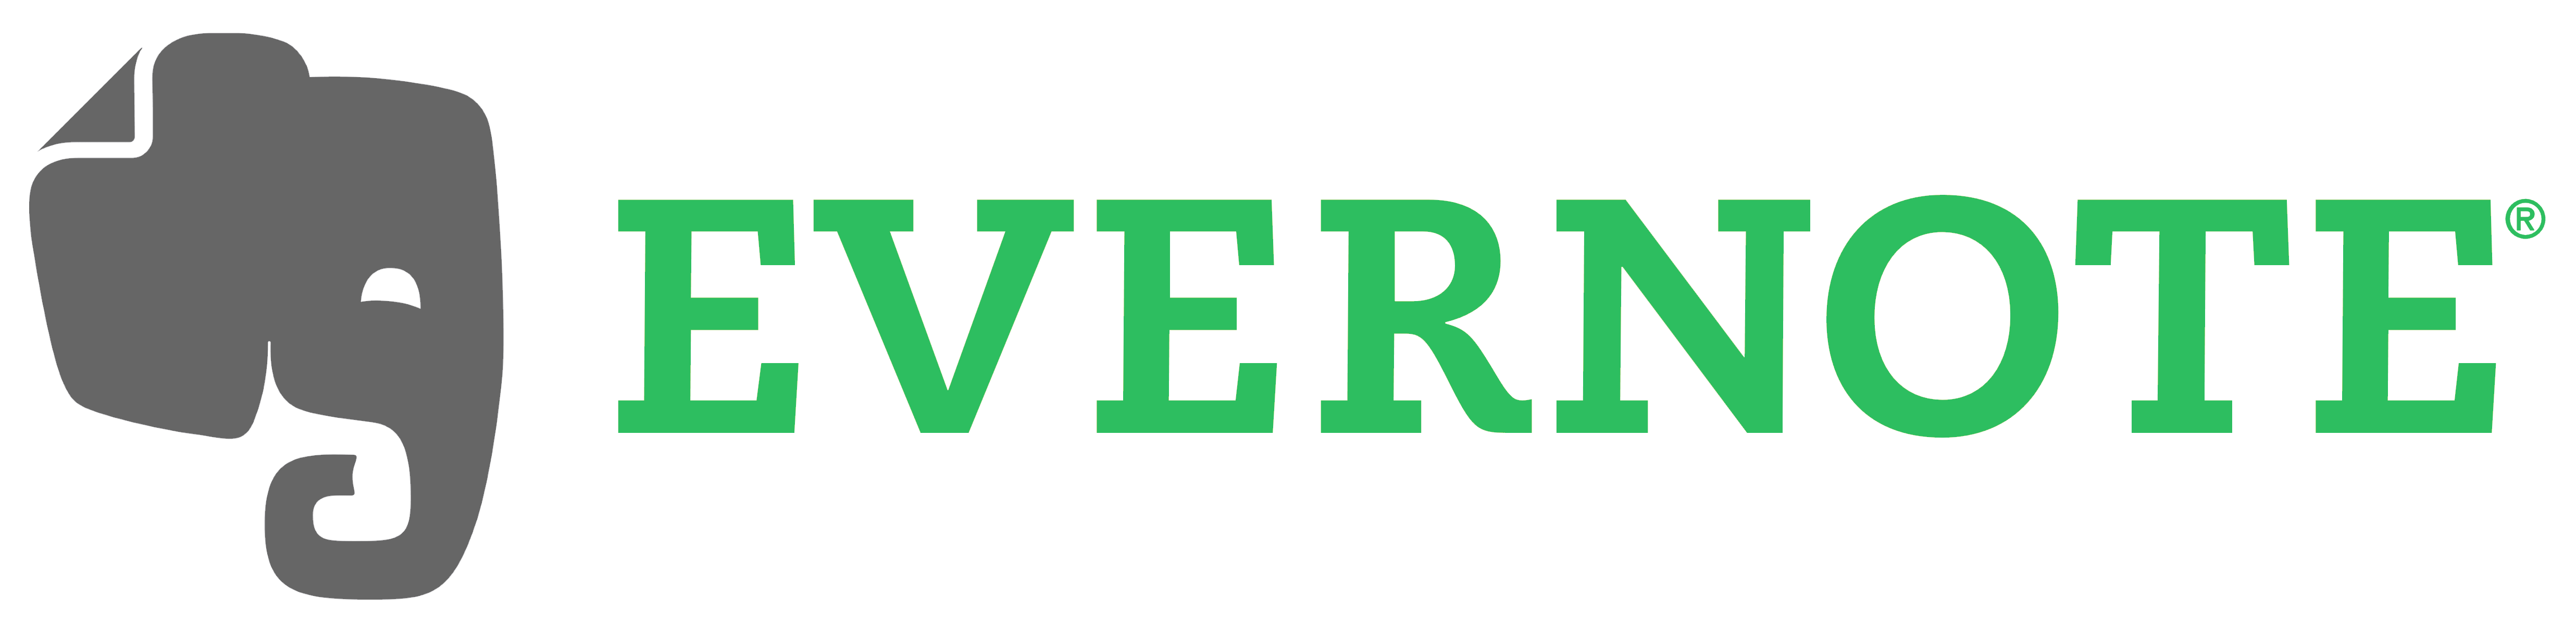 Afbeeldingsresultaat voor evernote logo